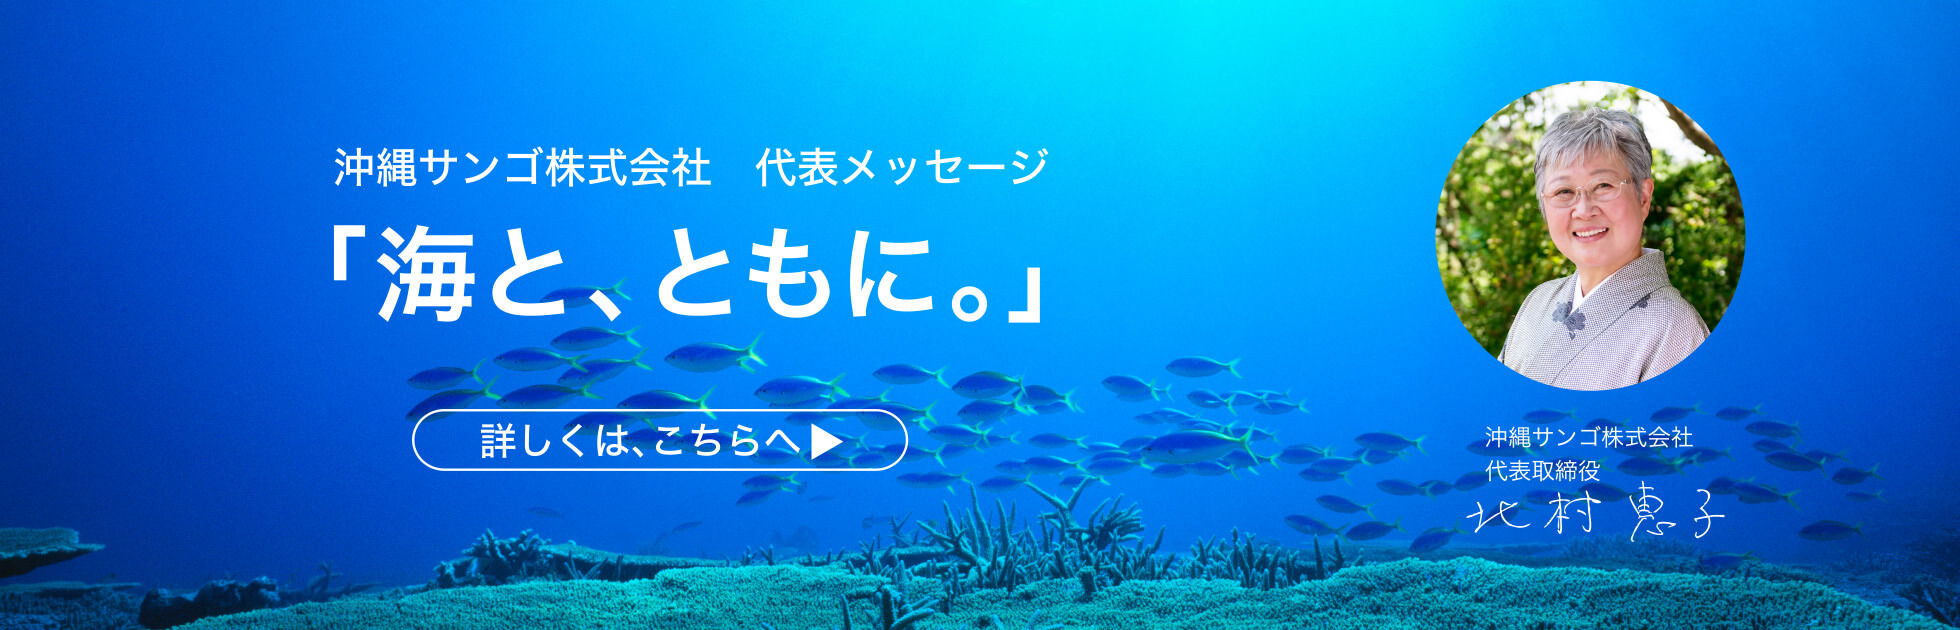 沖縄サンゴ株式会社 代表メッセージ 「海と、ともに。」